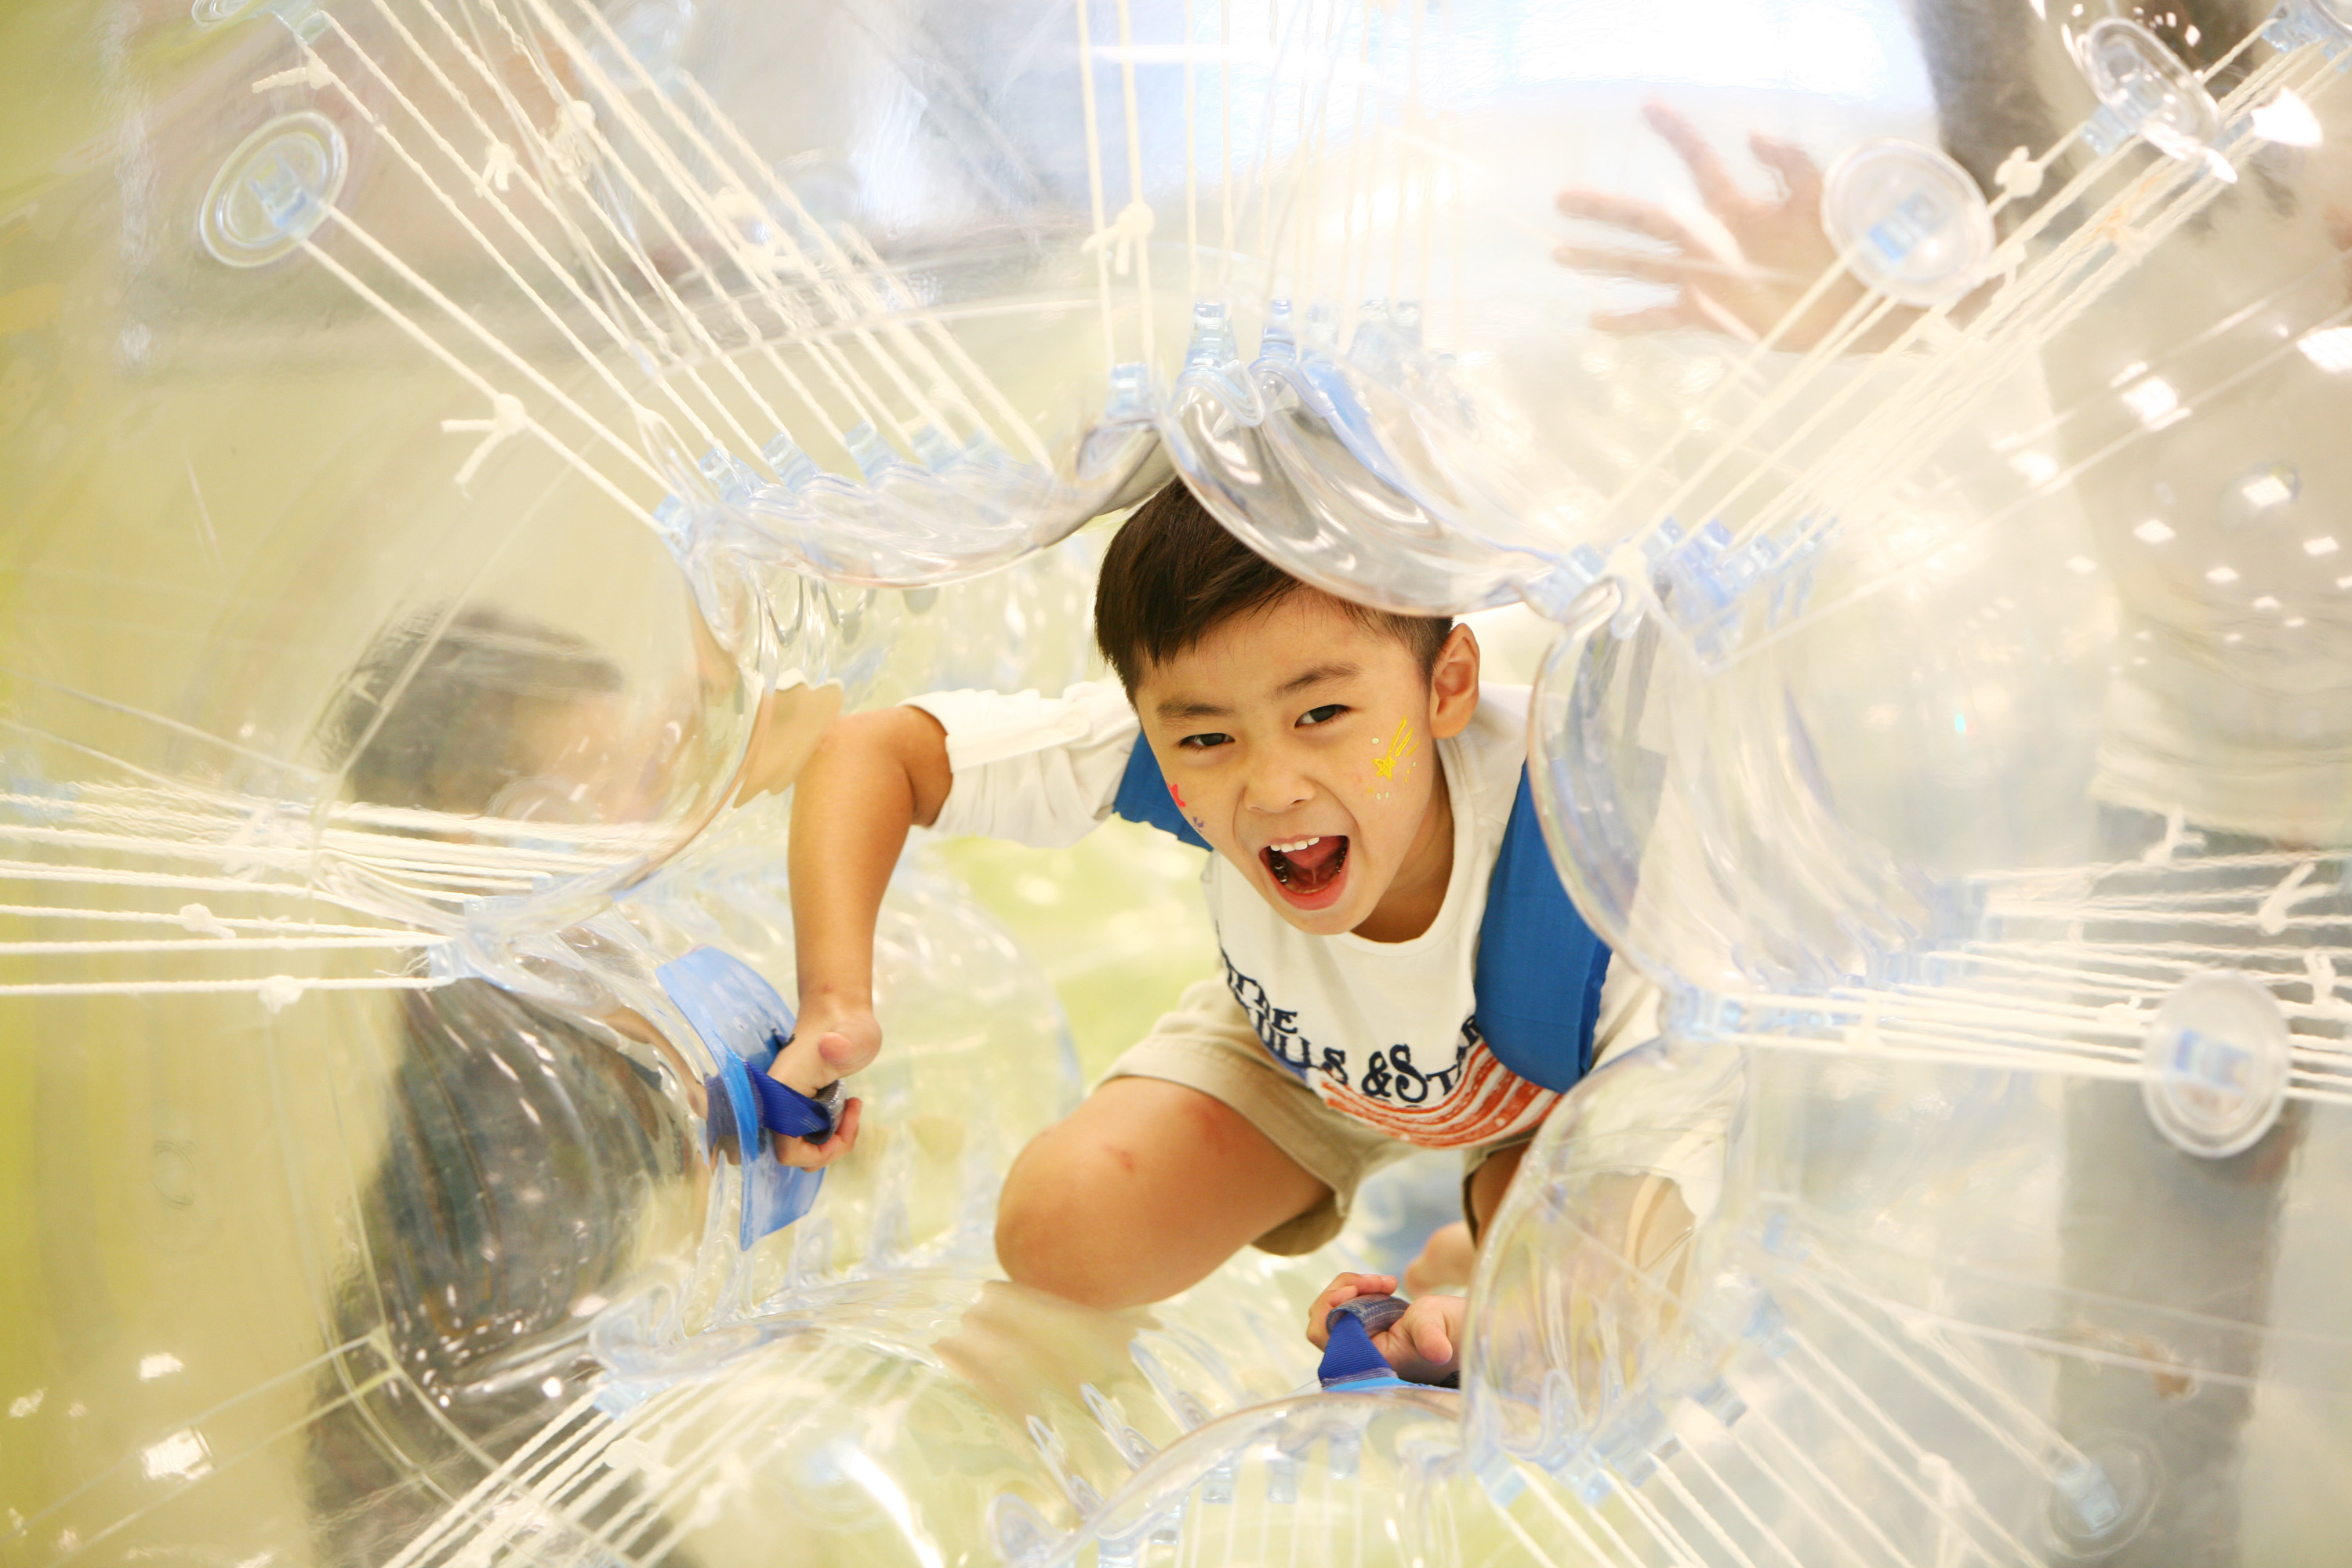 대한민국 대표 어린이 놀이 체험 공간으로 아이들이 놀면서 스포츠를 배우는 ‘챔피언’ 오픈 기념 21일(목) 10:00~11:00, 딱 1시간 50명 무료 입장 이벤트로 똑똑하게 선점해라